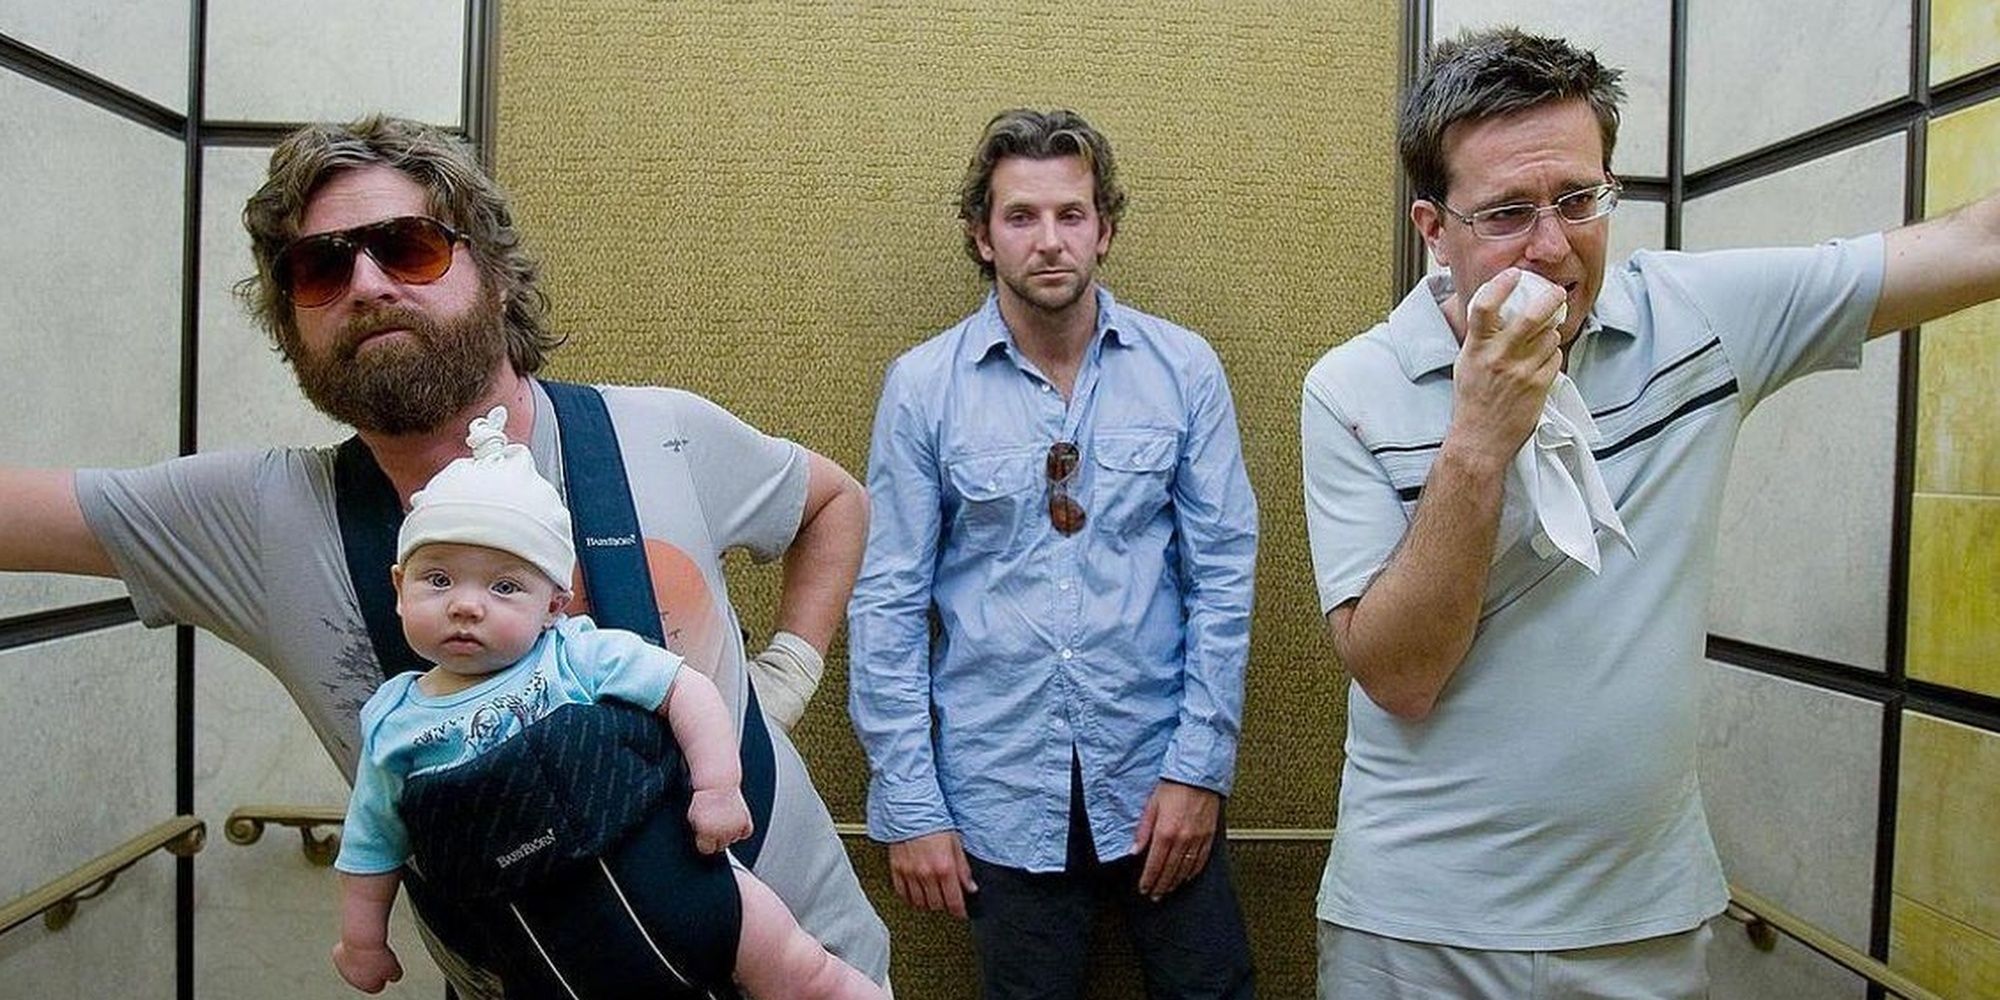 Tres hombres que lucen desaliñados mientras viajan en un ascensor en The Hangover.